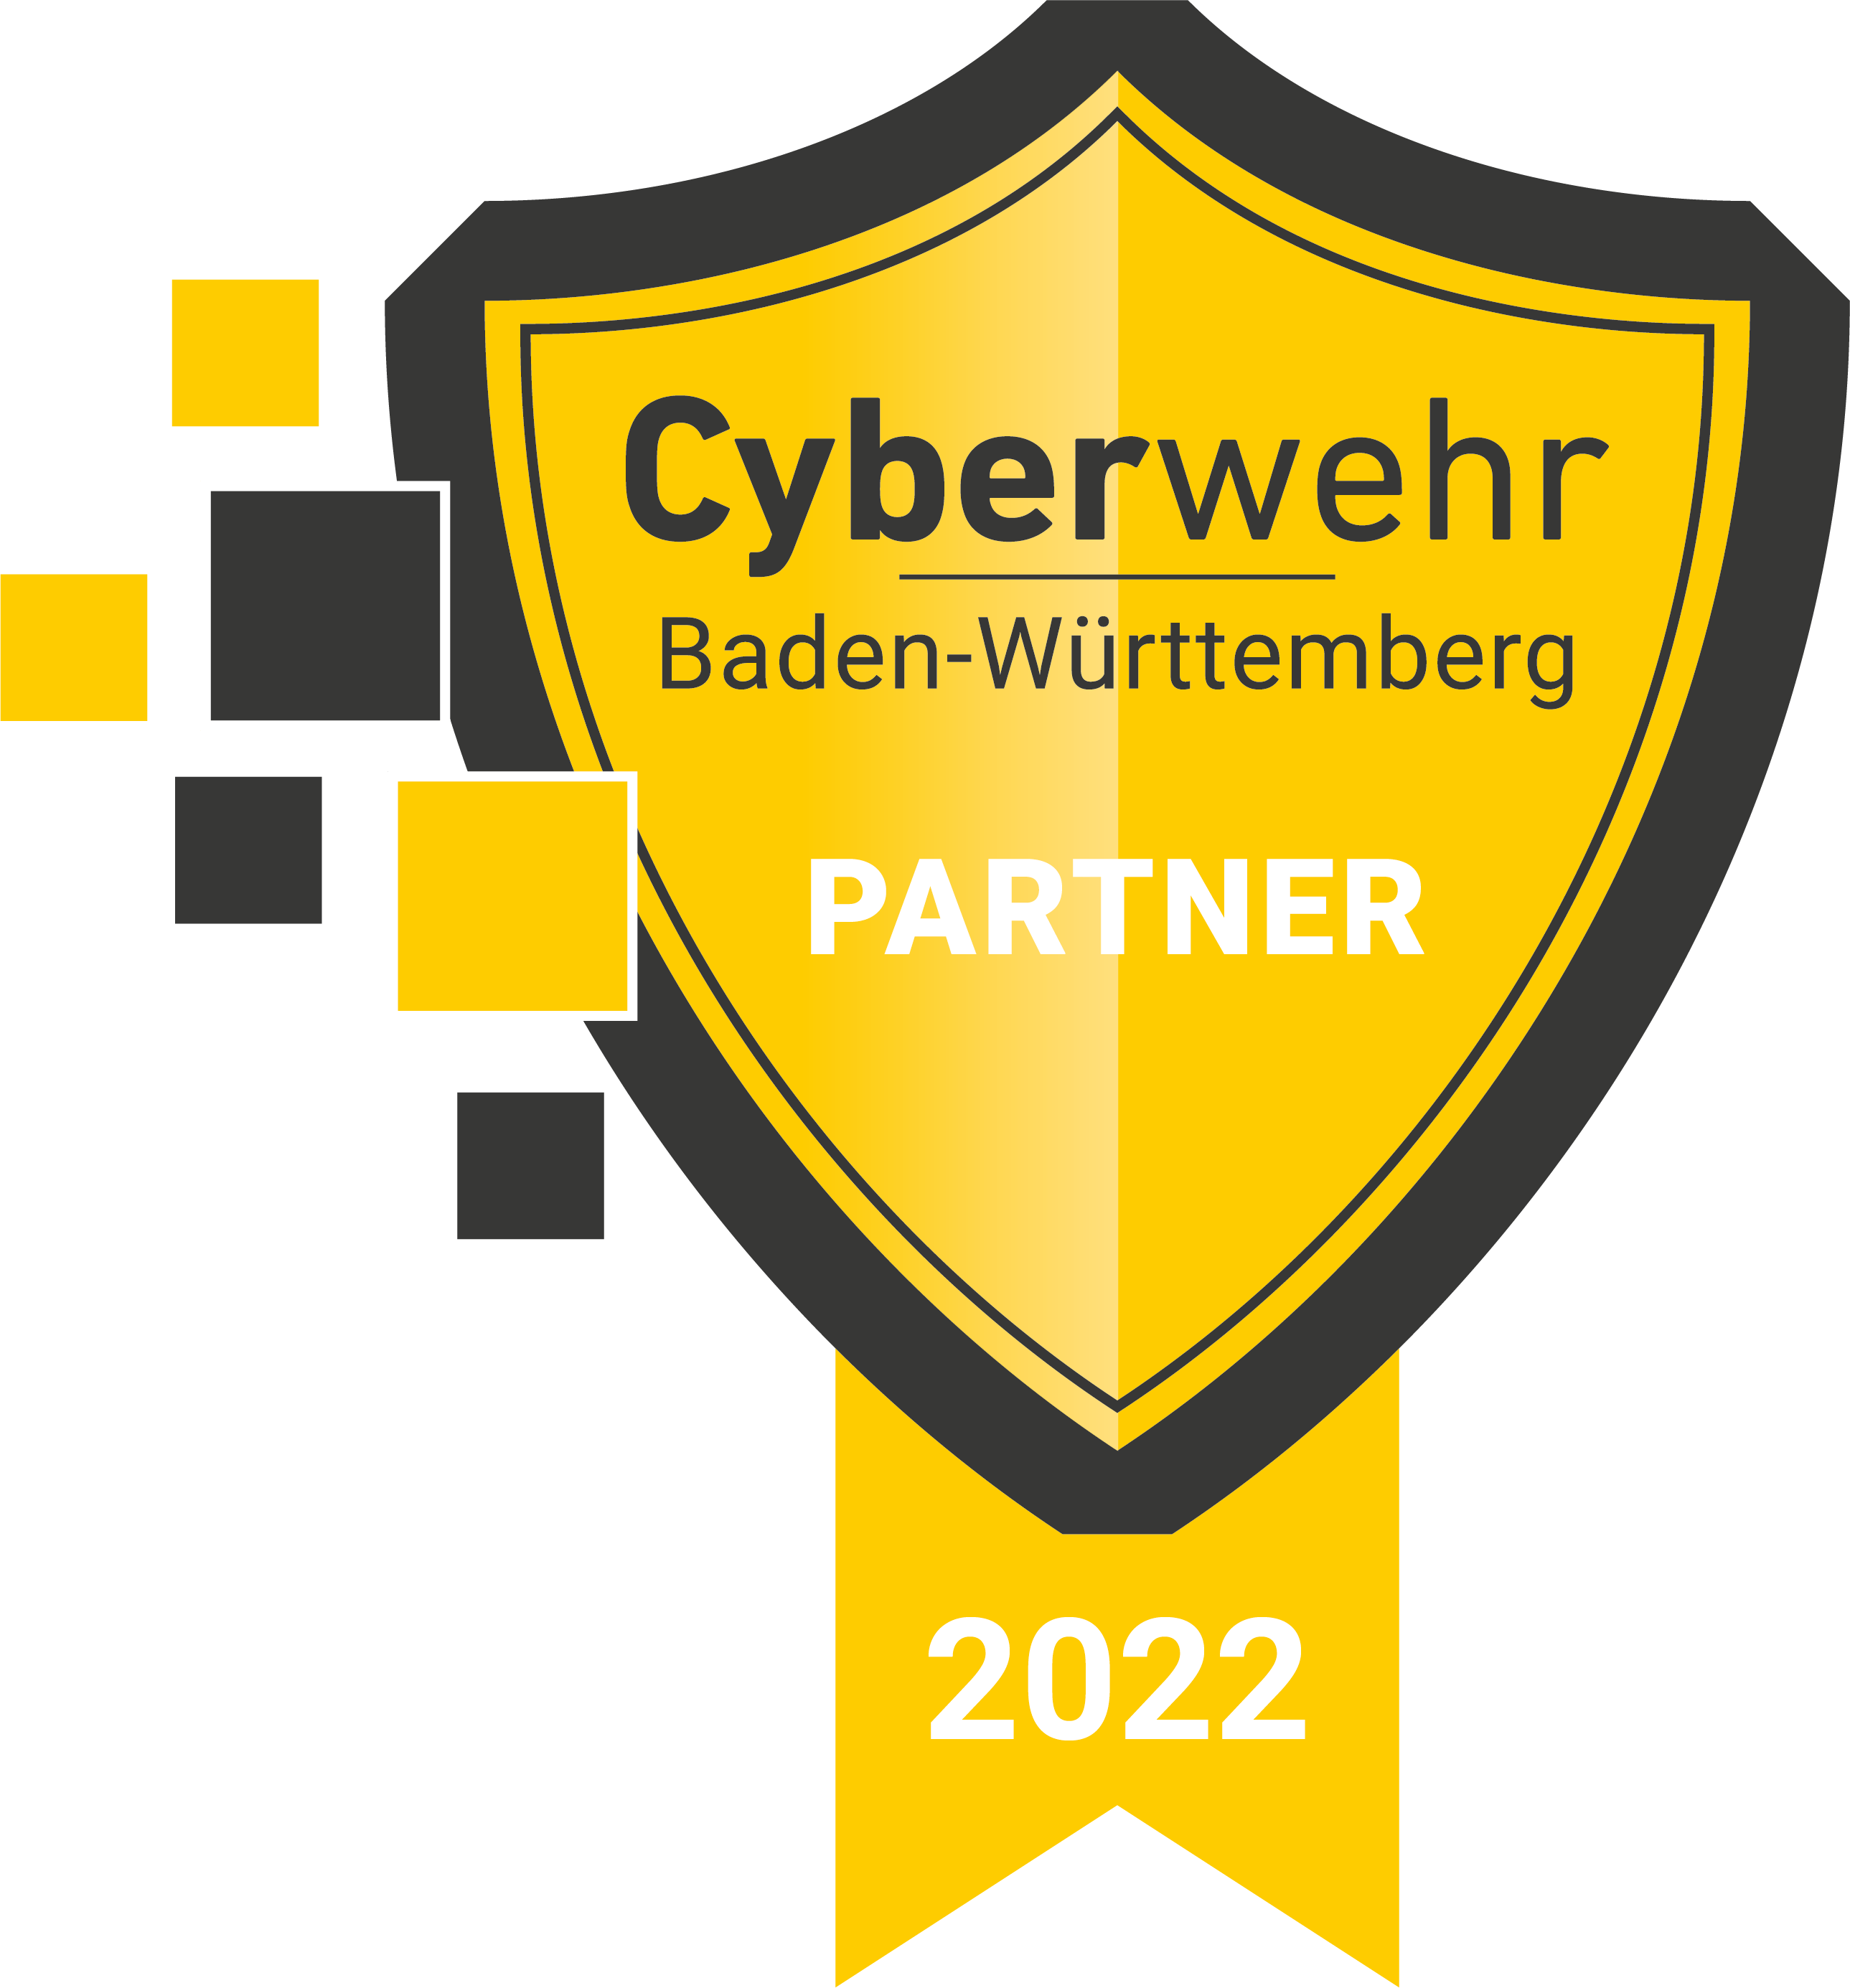 Cyberwehr Baden-Württemberg Partner 2022